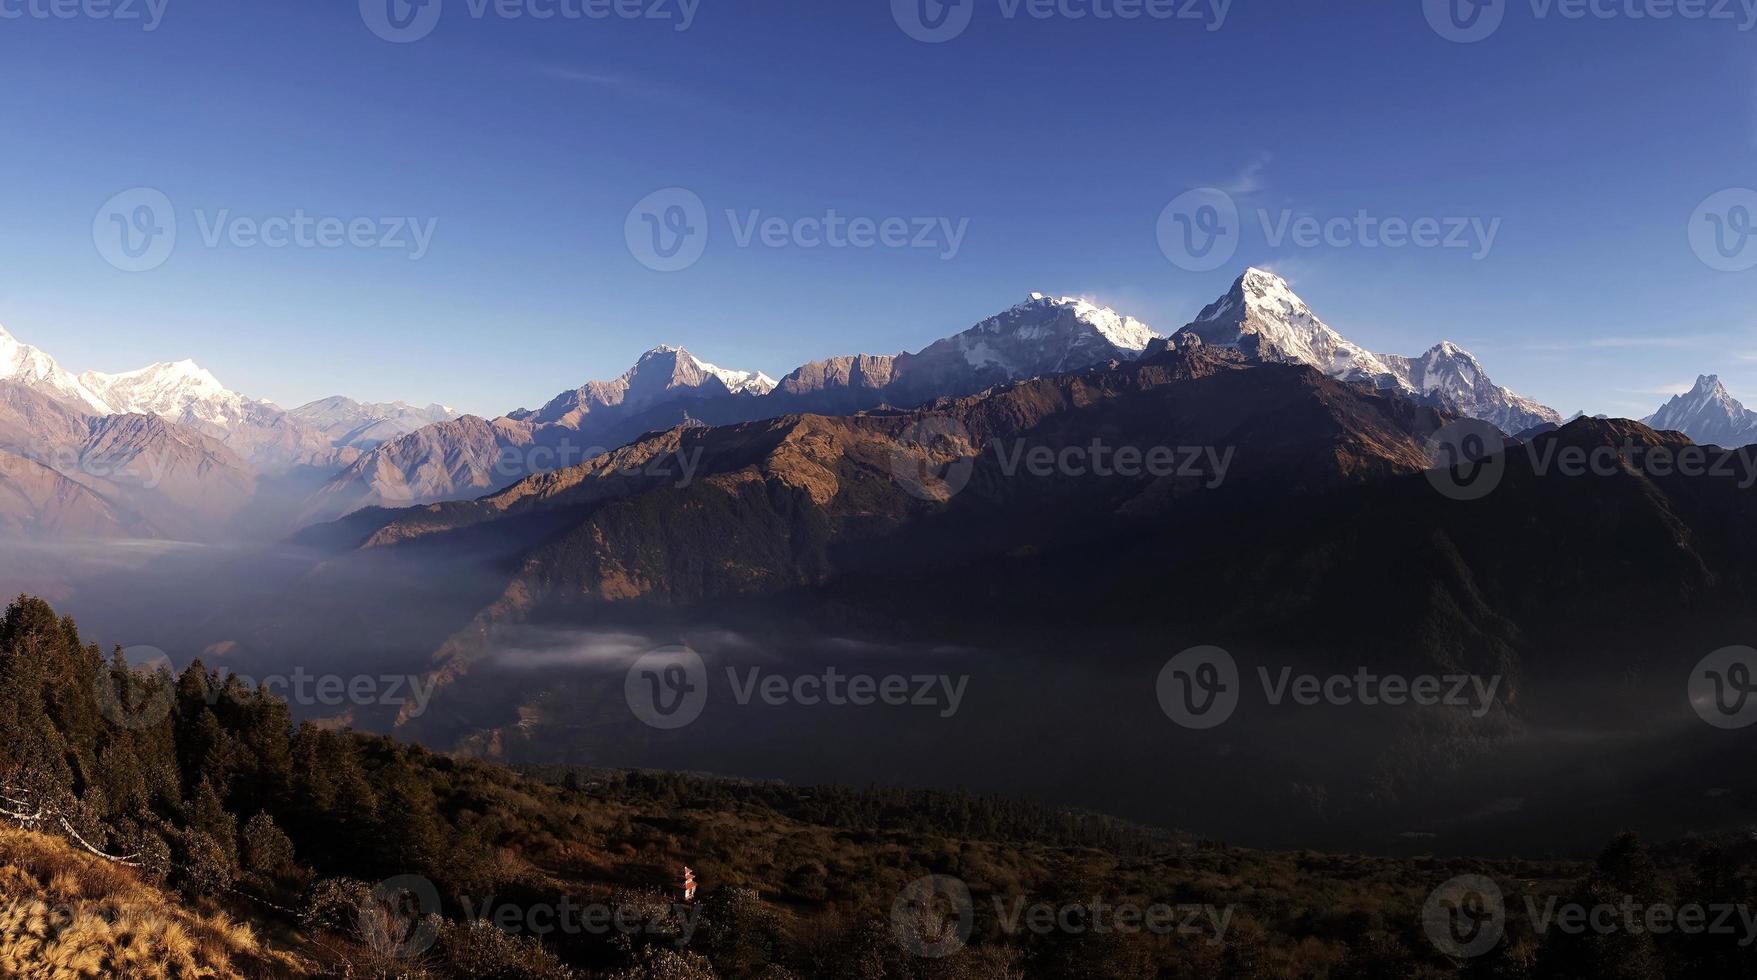 vista panorâmica da majestosa cordilheira do Himalaia durante o nascer do sol vista do ponto de vista de poon hill em nepal foto